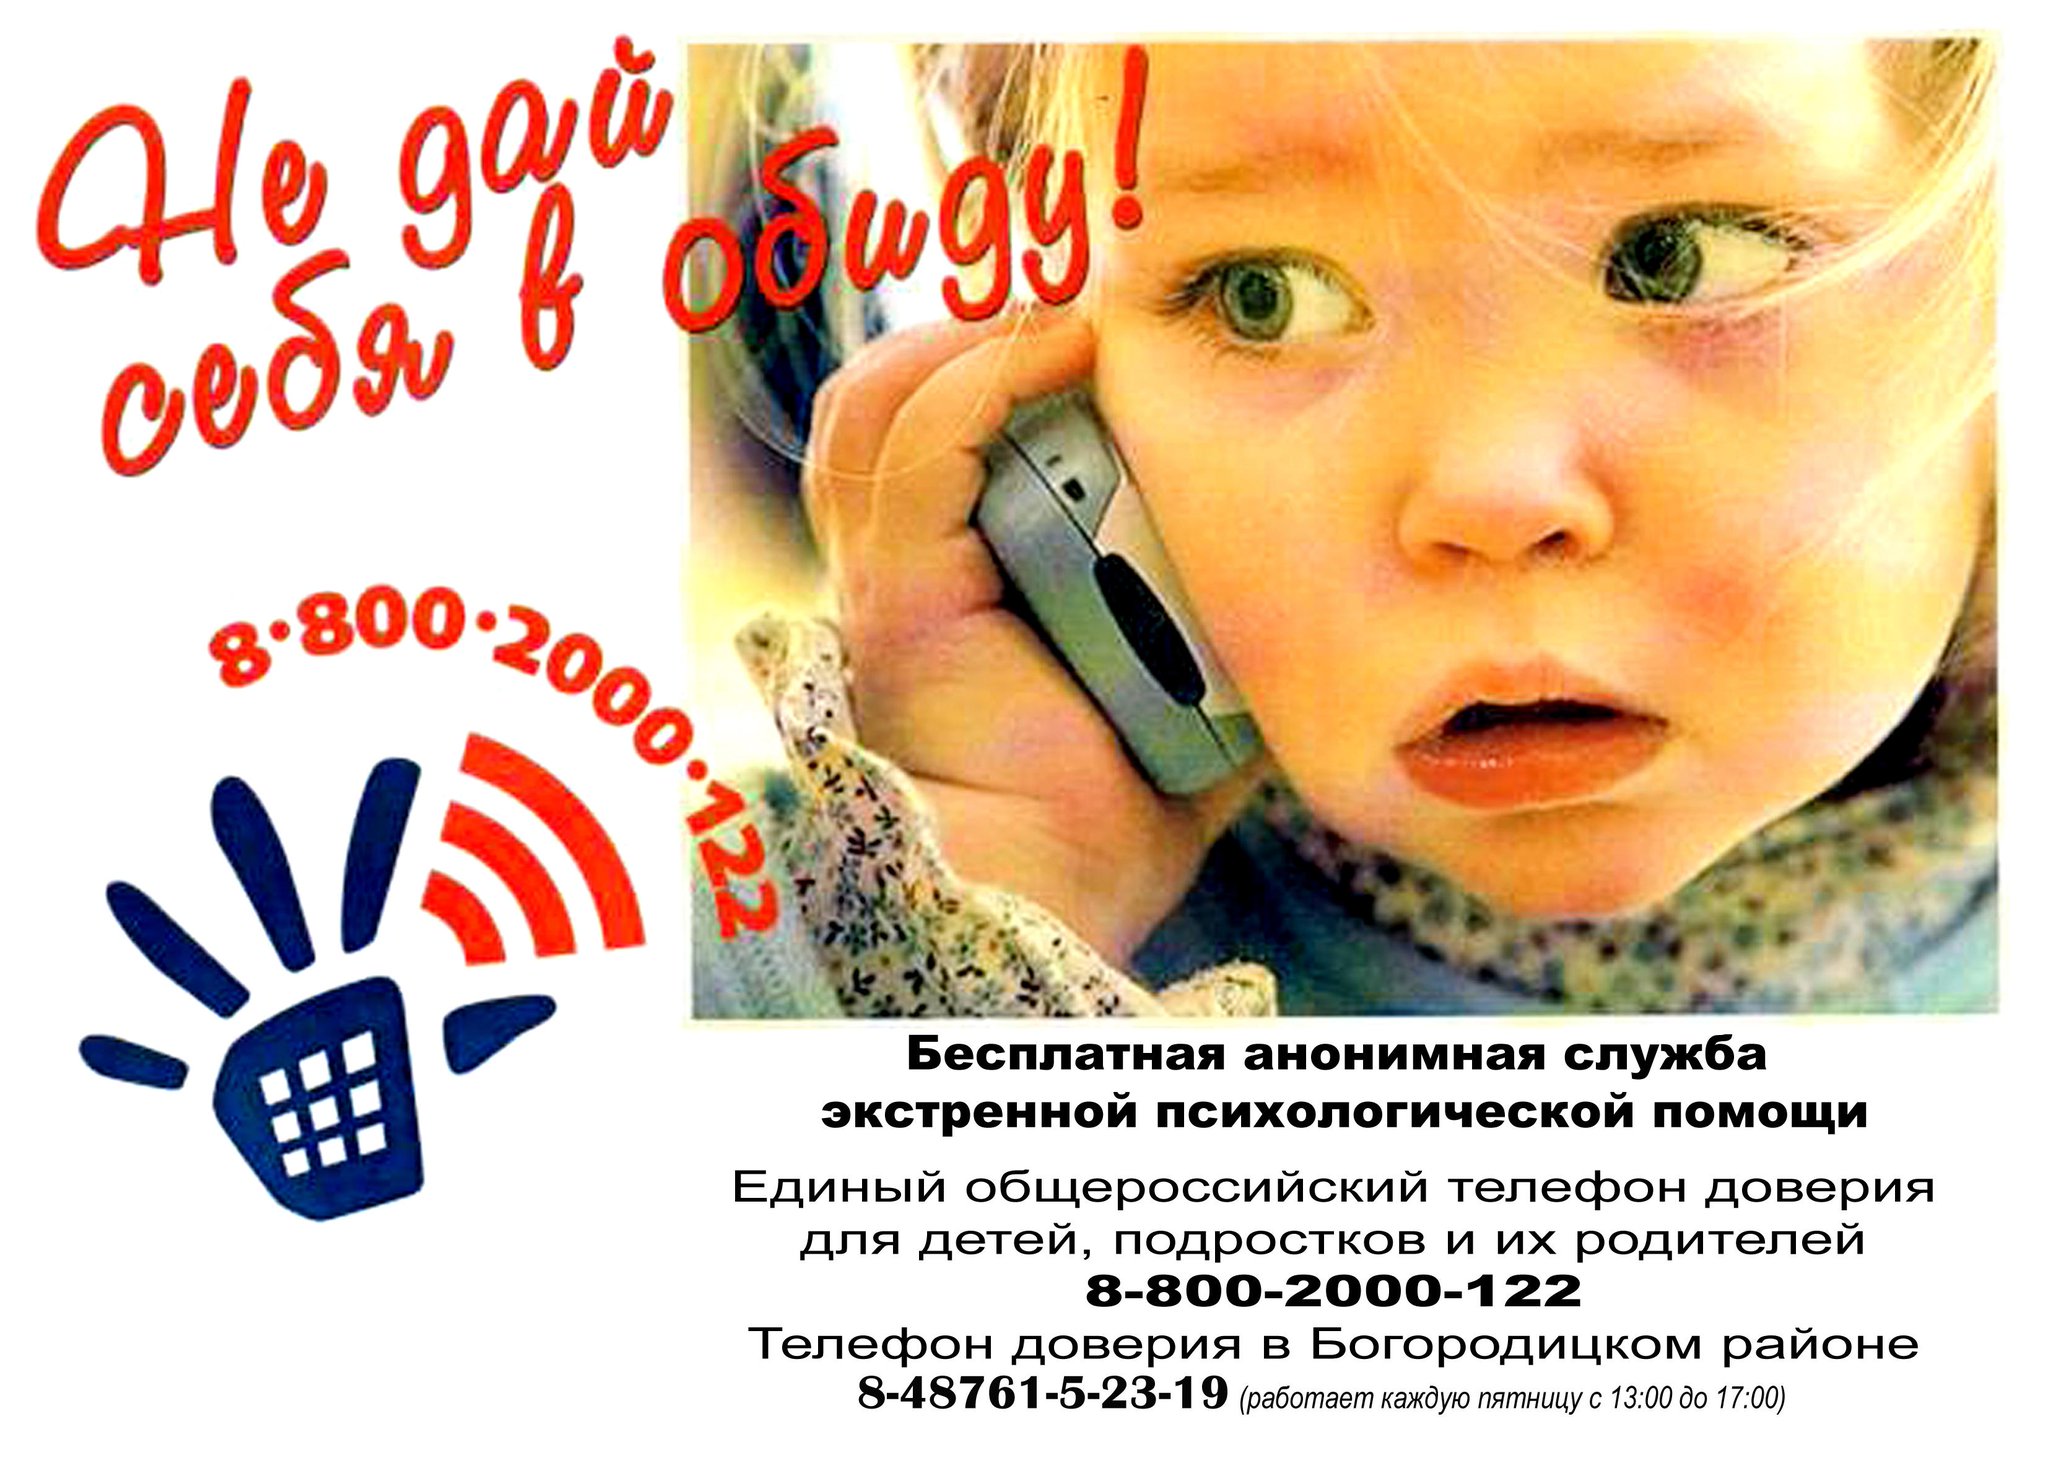 Консультант телефона доверия. Единый детский телефон доверия 8-800-2000-122. Телефон доверия. Телефон доверия для детей. Детские телефоны доверия.